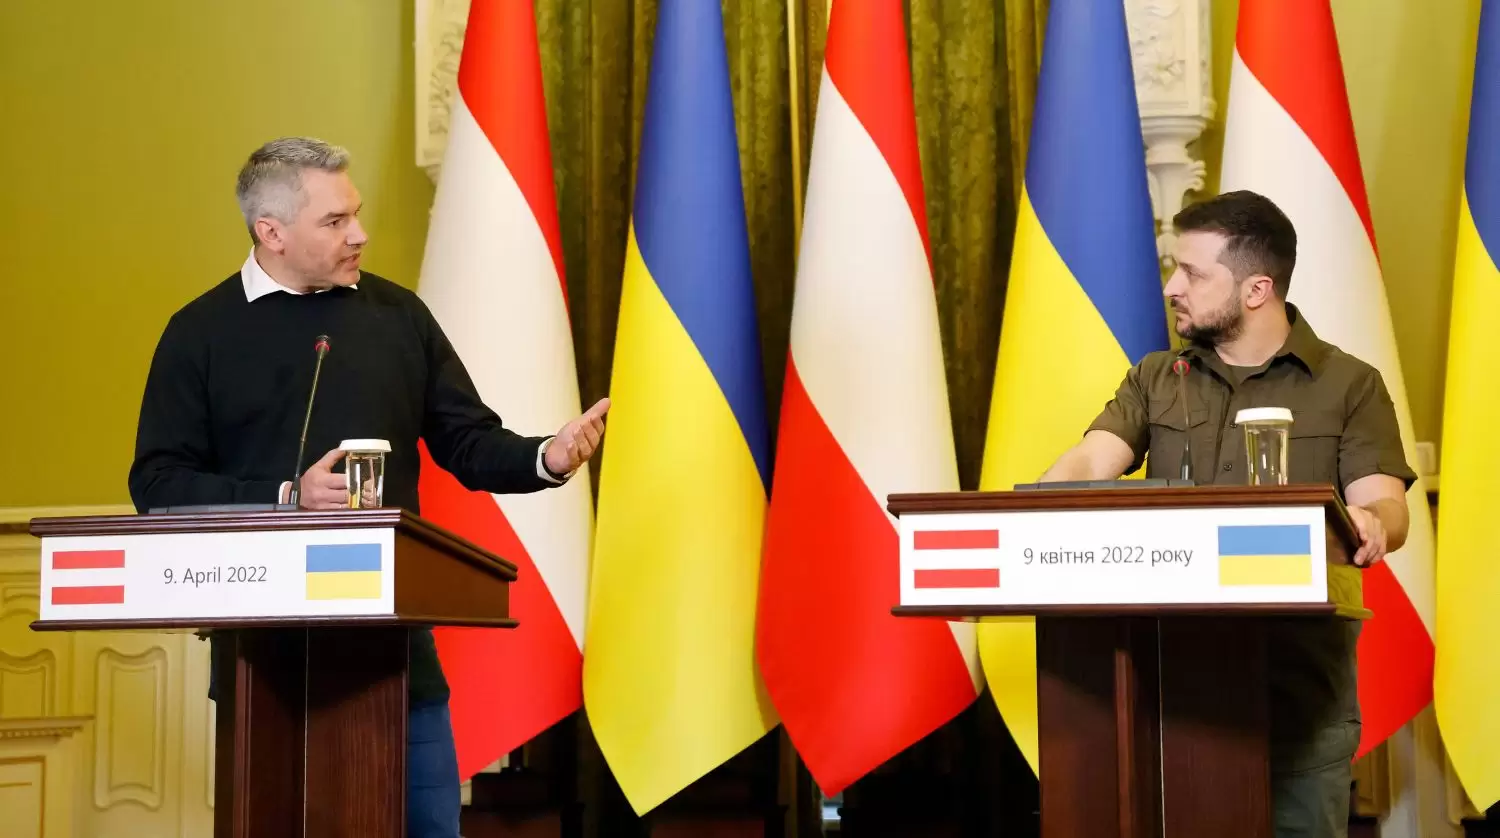 Bundeskanzler Karl Nehammer und Präsident Wolodymyr Selenksyi in Kiew: Ukraine braucht Unterstützung. Foto: Bka, Dragan Tatic